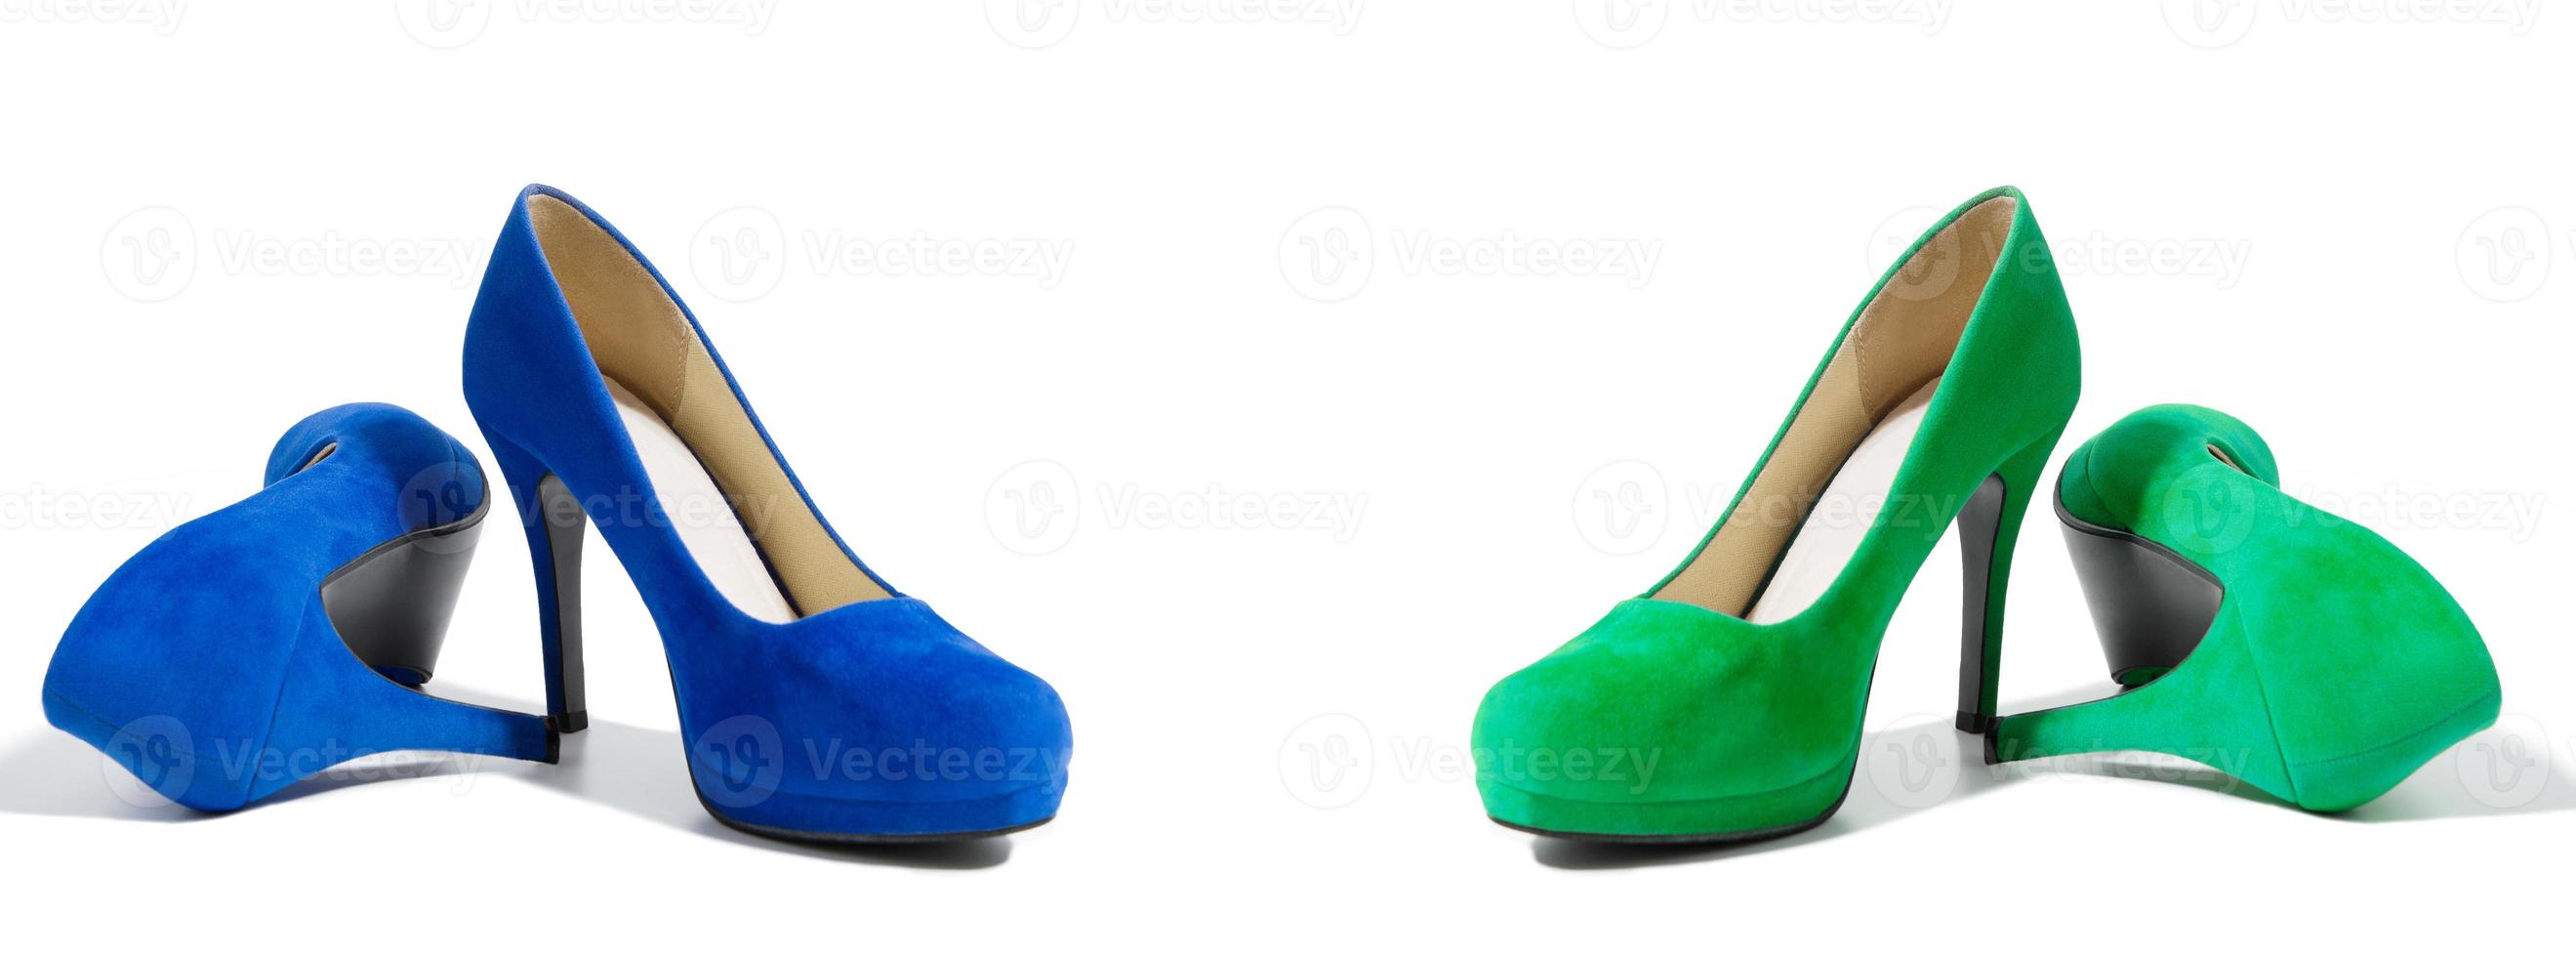 Primer plano de zapatos de tacones altos de moda aislado sobre fondo blanco. zapato de mujer de color verde y azul en el suelo. concepto de compras y moda. copie el espacio. enfoque selectivo foto